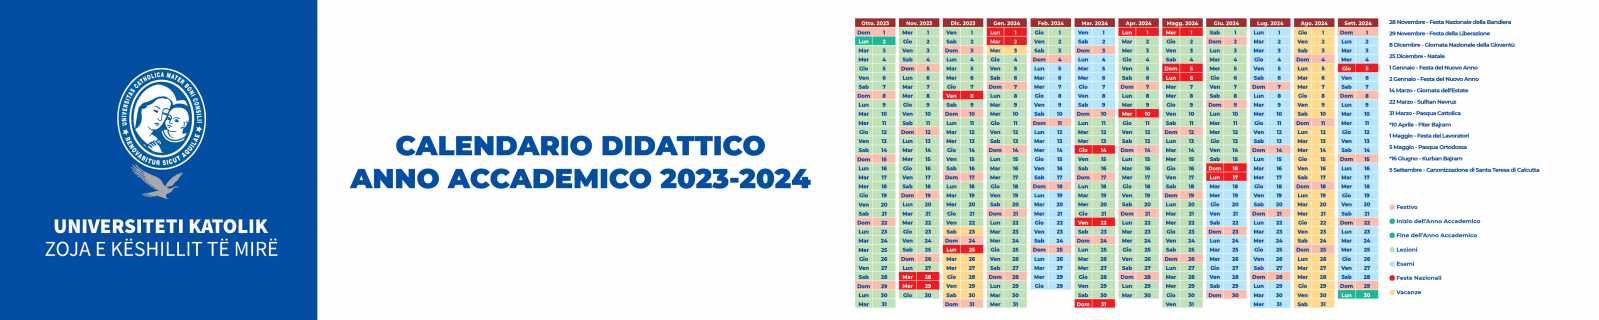 Calendario Didattico Anno Accademico 2023-2024